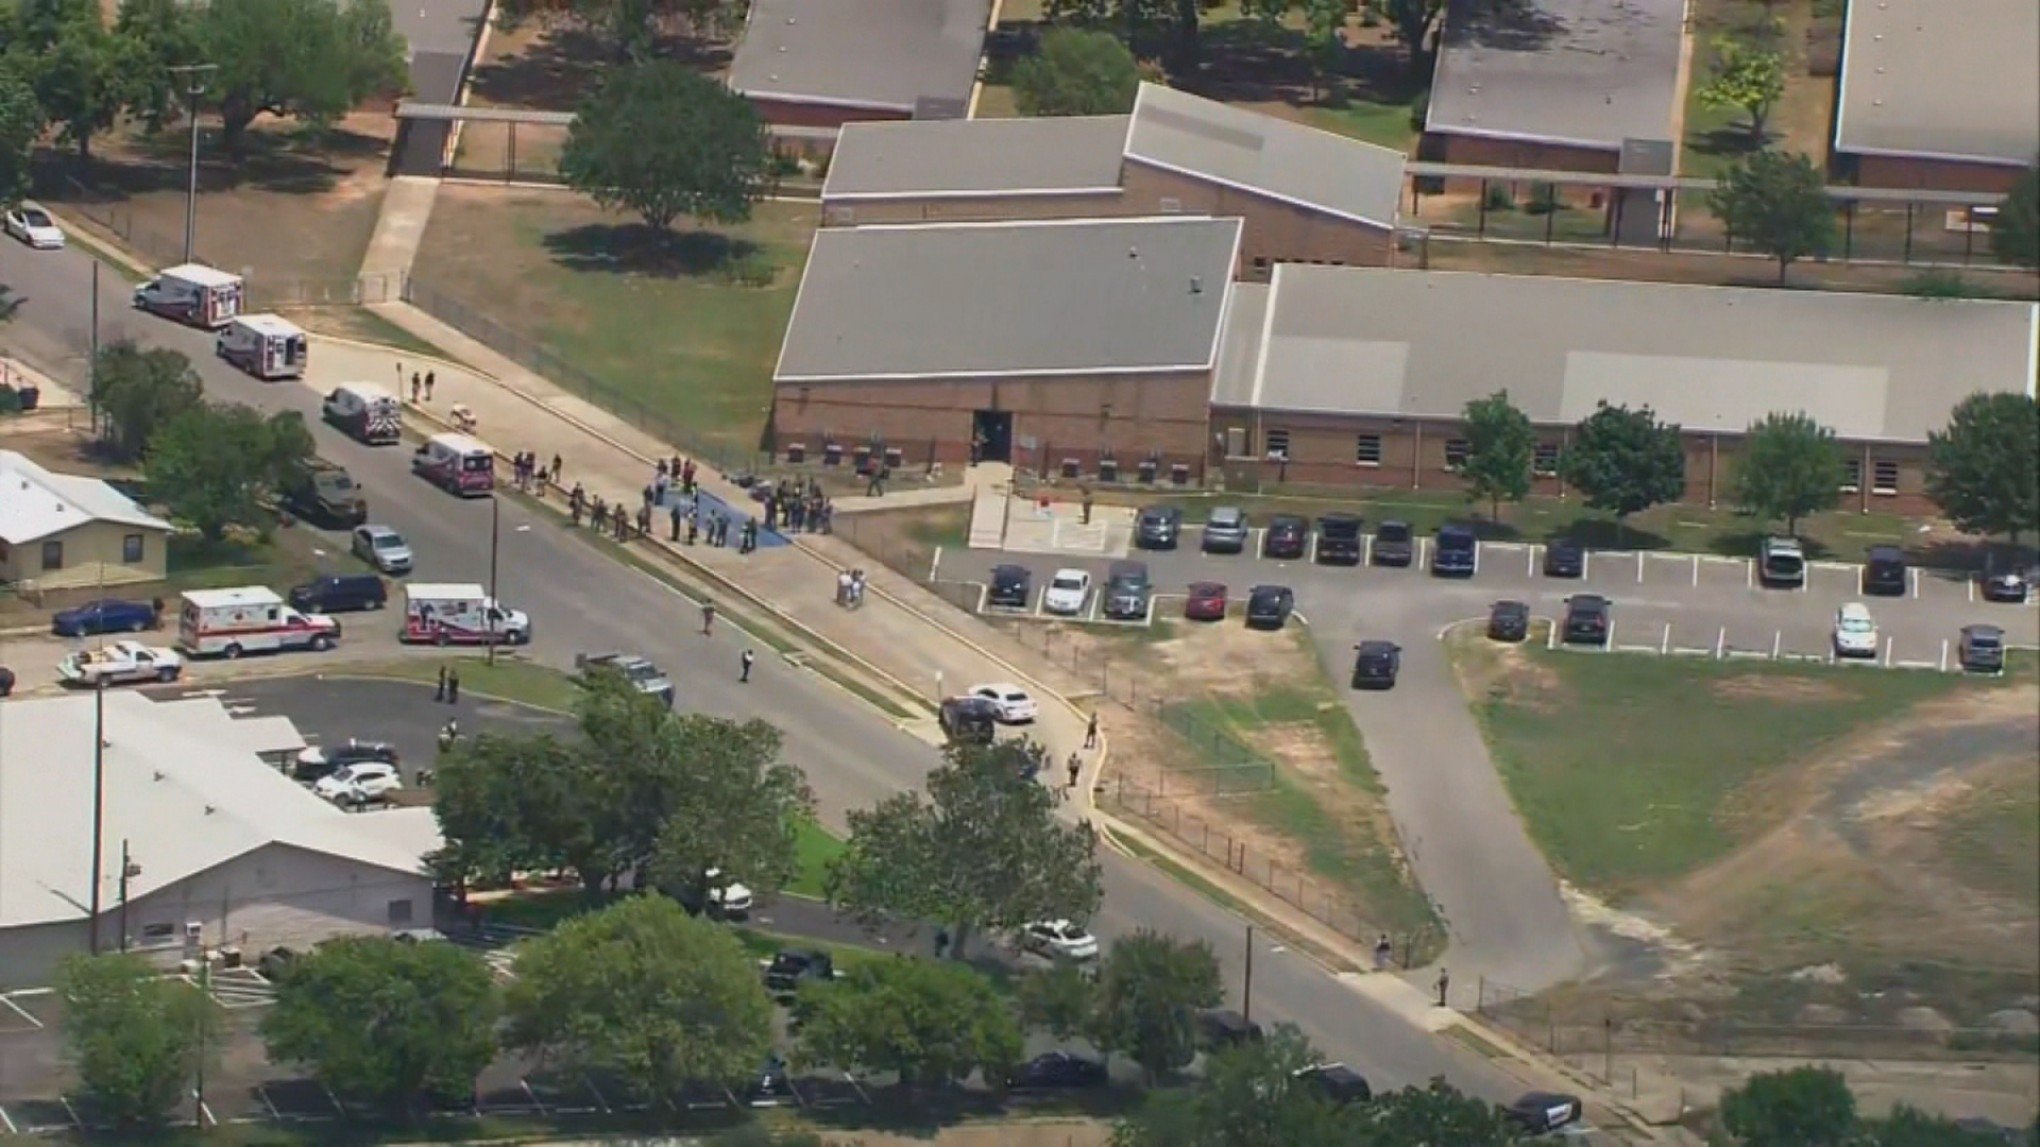 Texas: Catorze crianças e professor mortos em tiroteio em escola infant